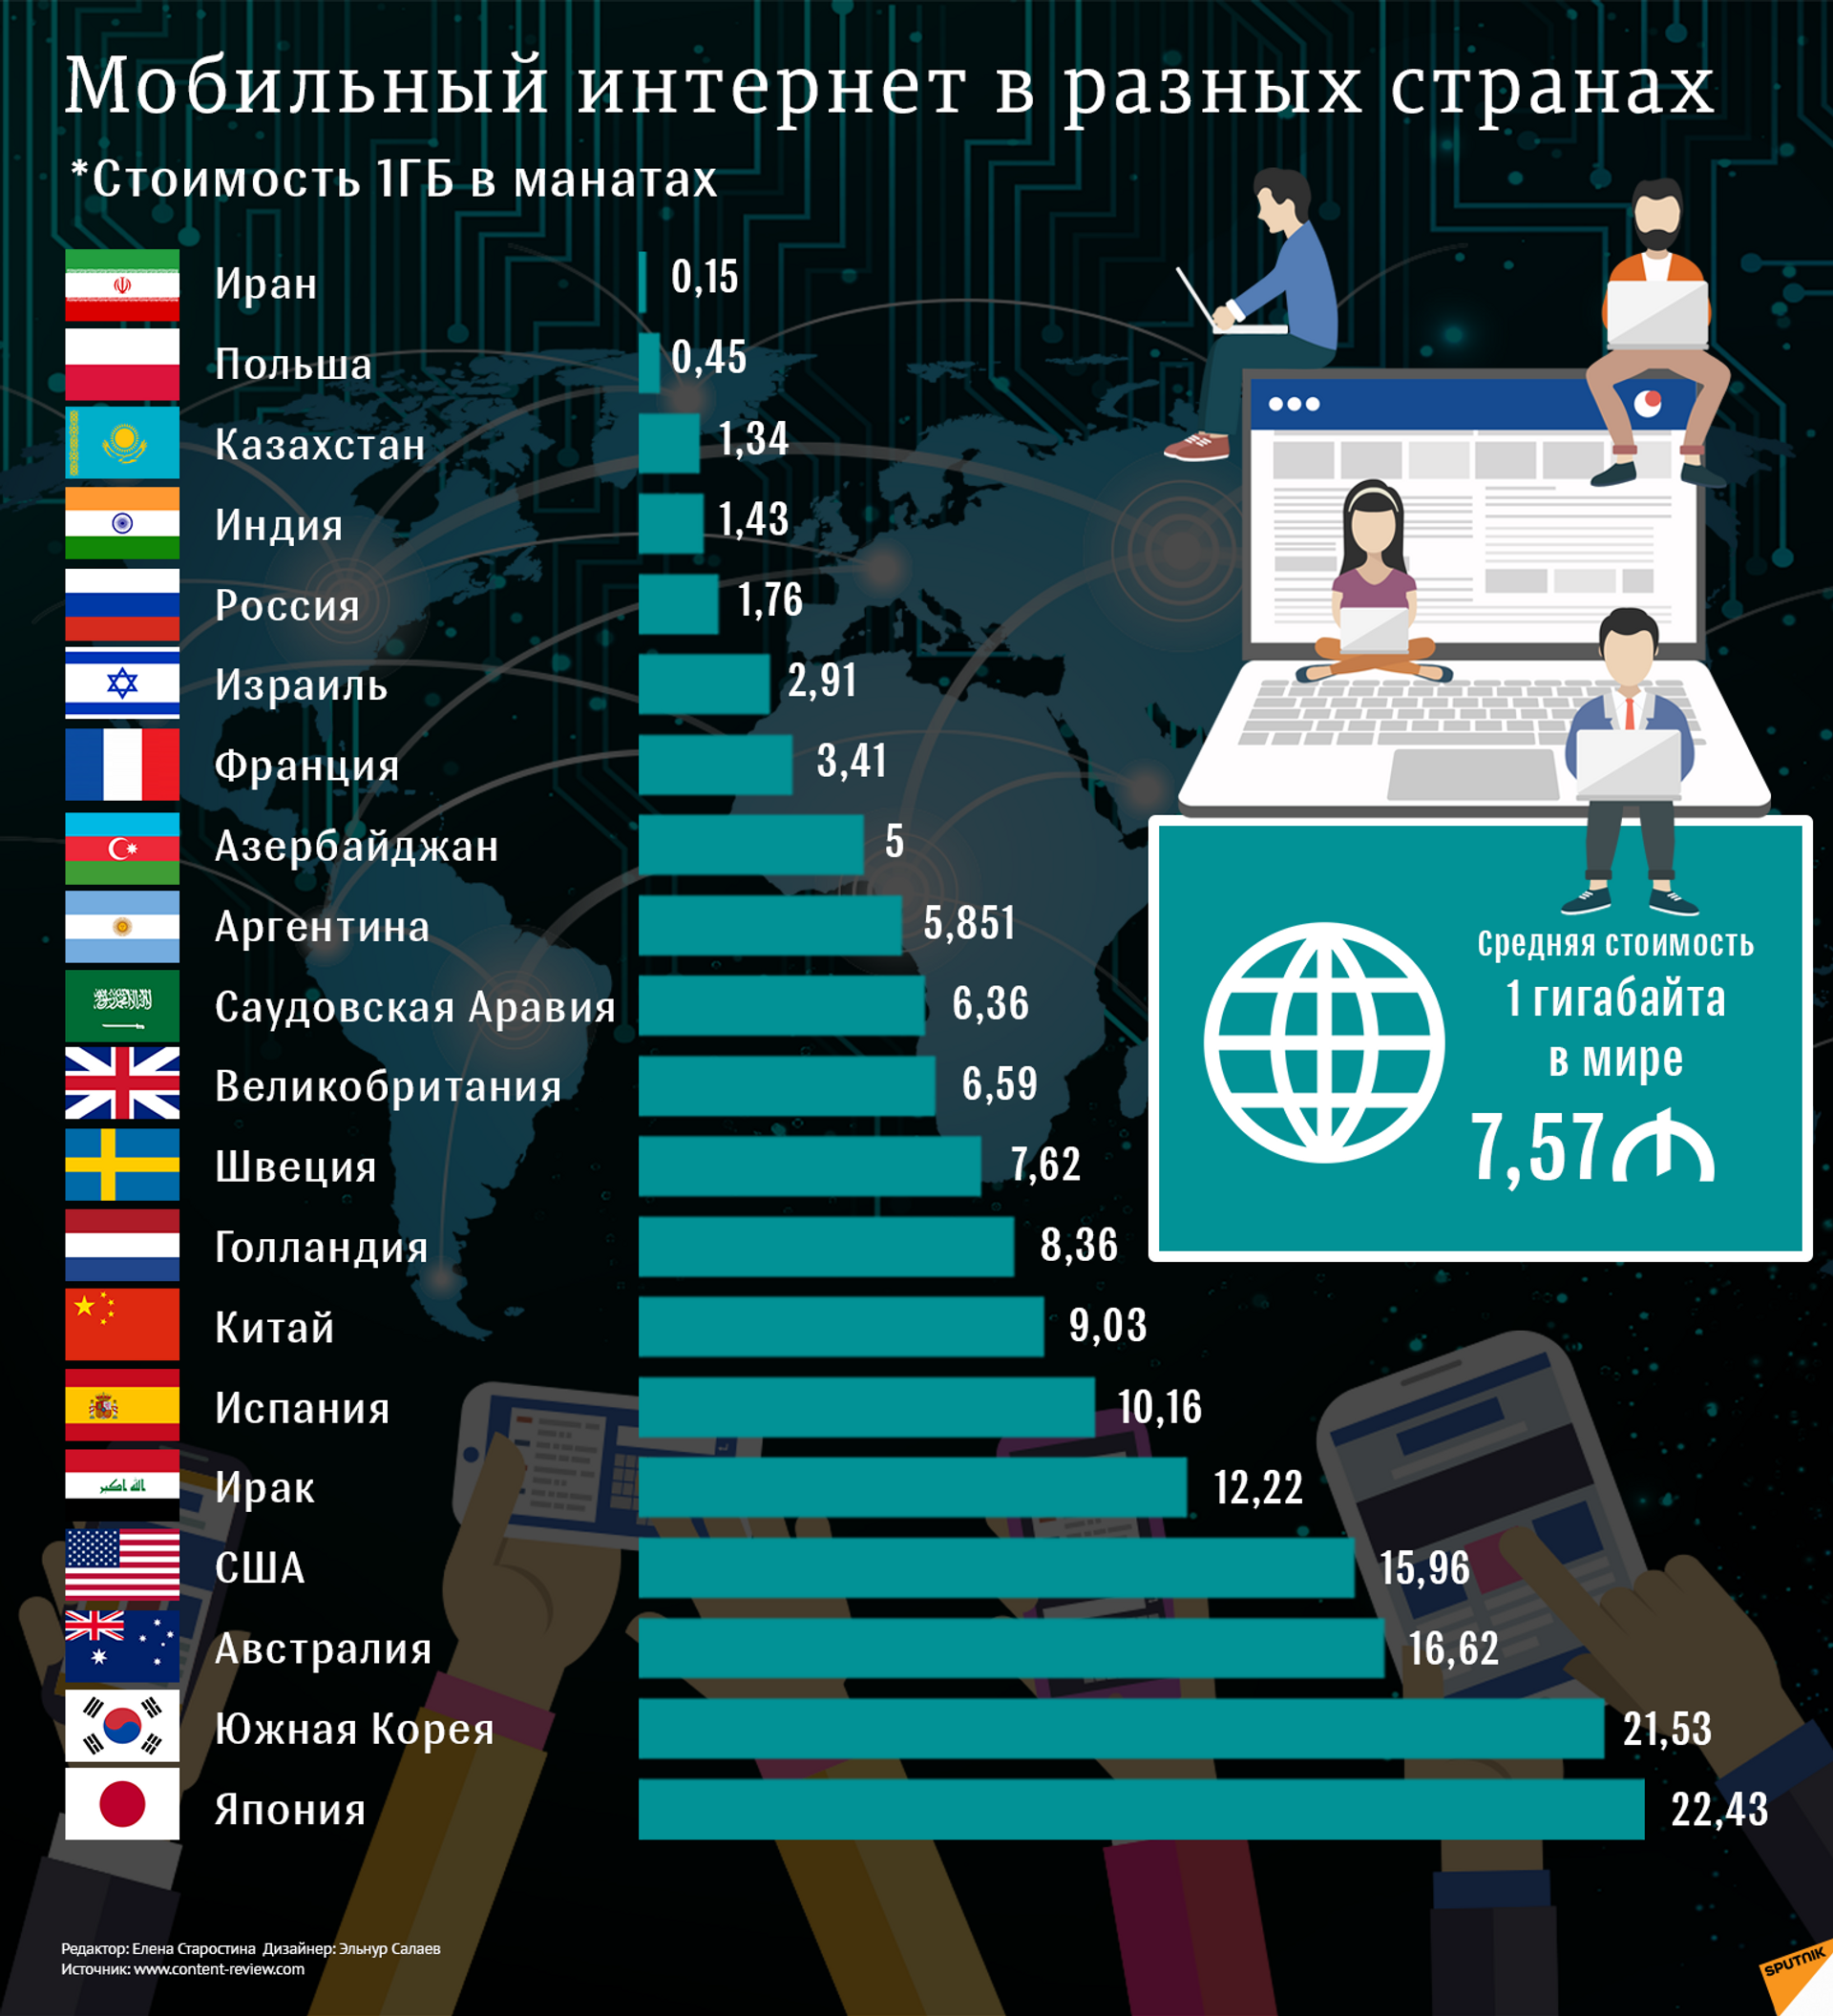 Качество интернета в россии. Самый лучший интернет в мире. Использование интернета в разных странах. Рейтинг разных стран. Стоимость интернета по странам.